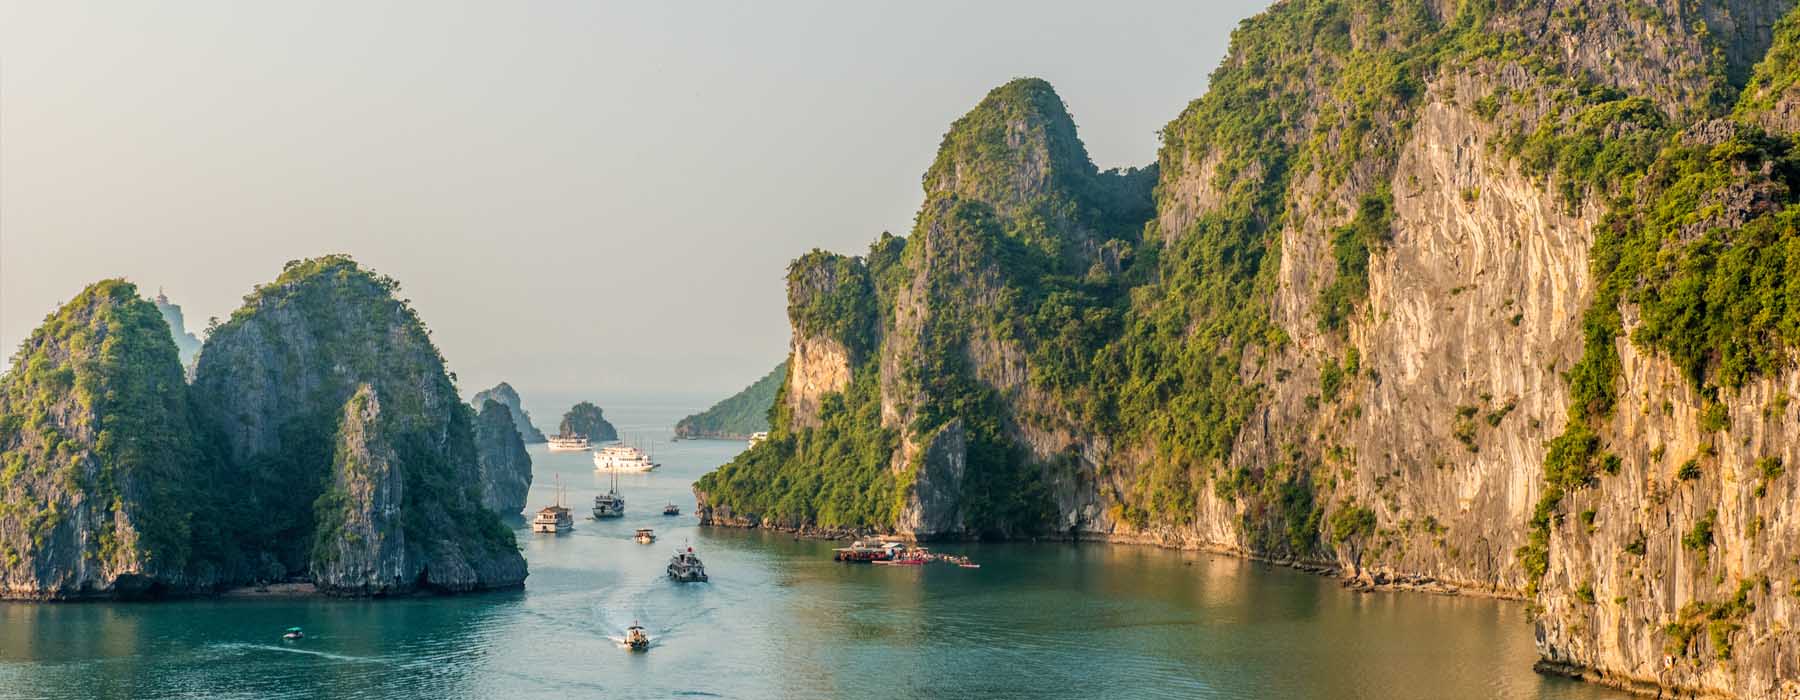 Vietnam<br class="hidden-md hidden-lg" /> Responsible Travel